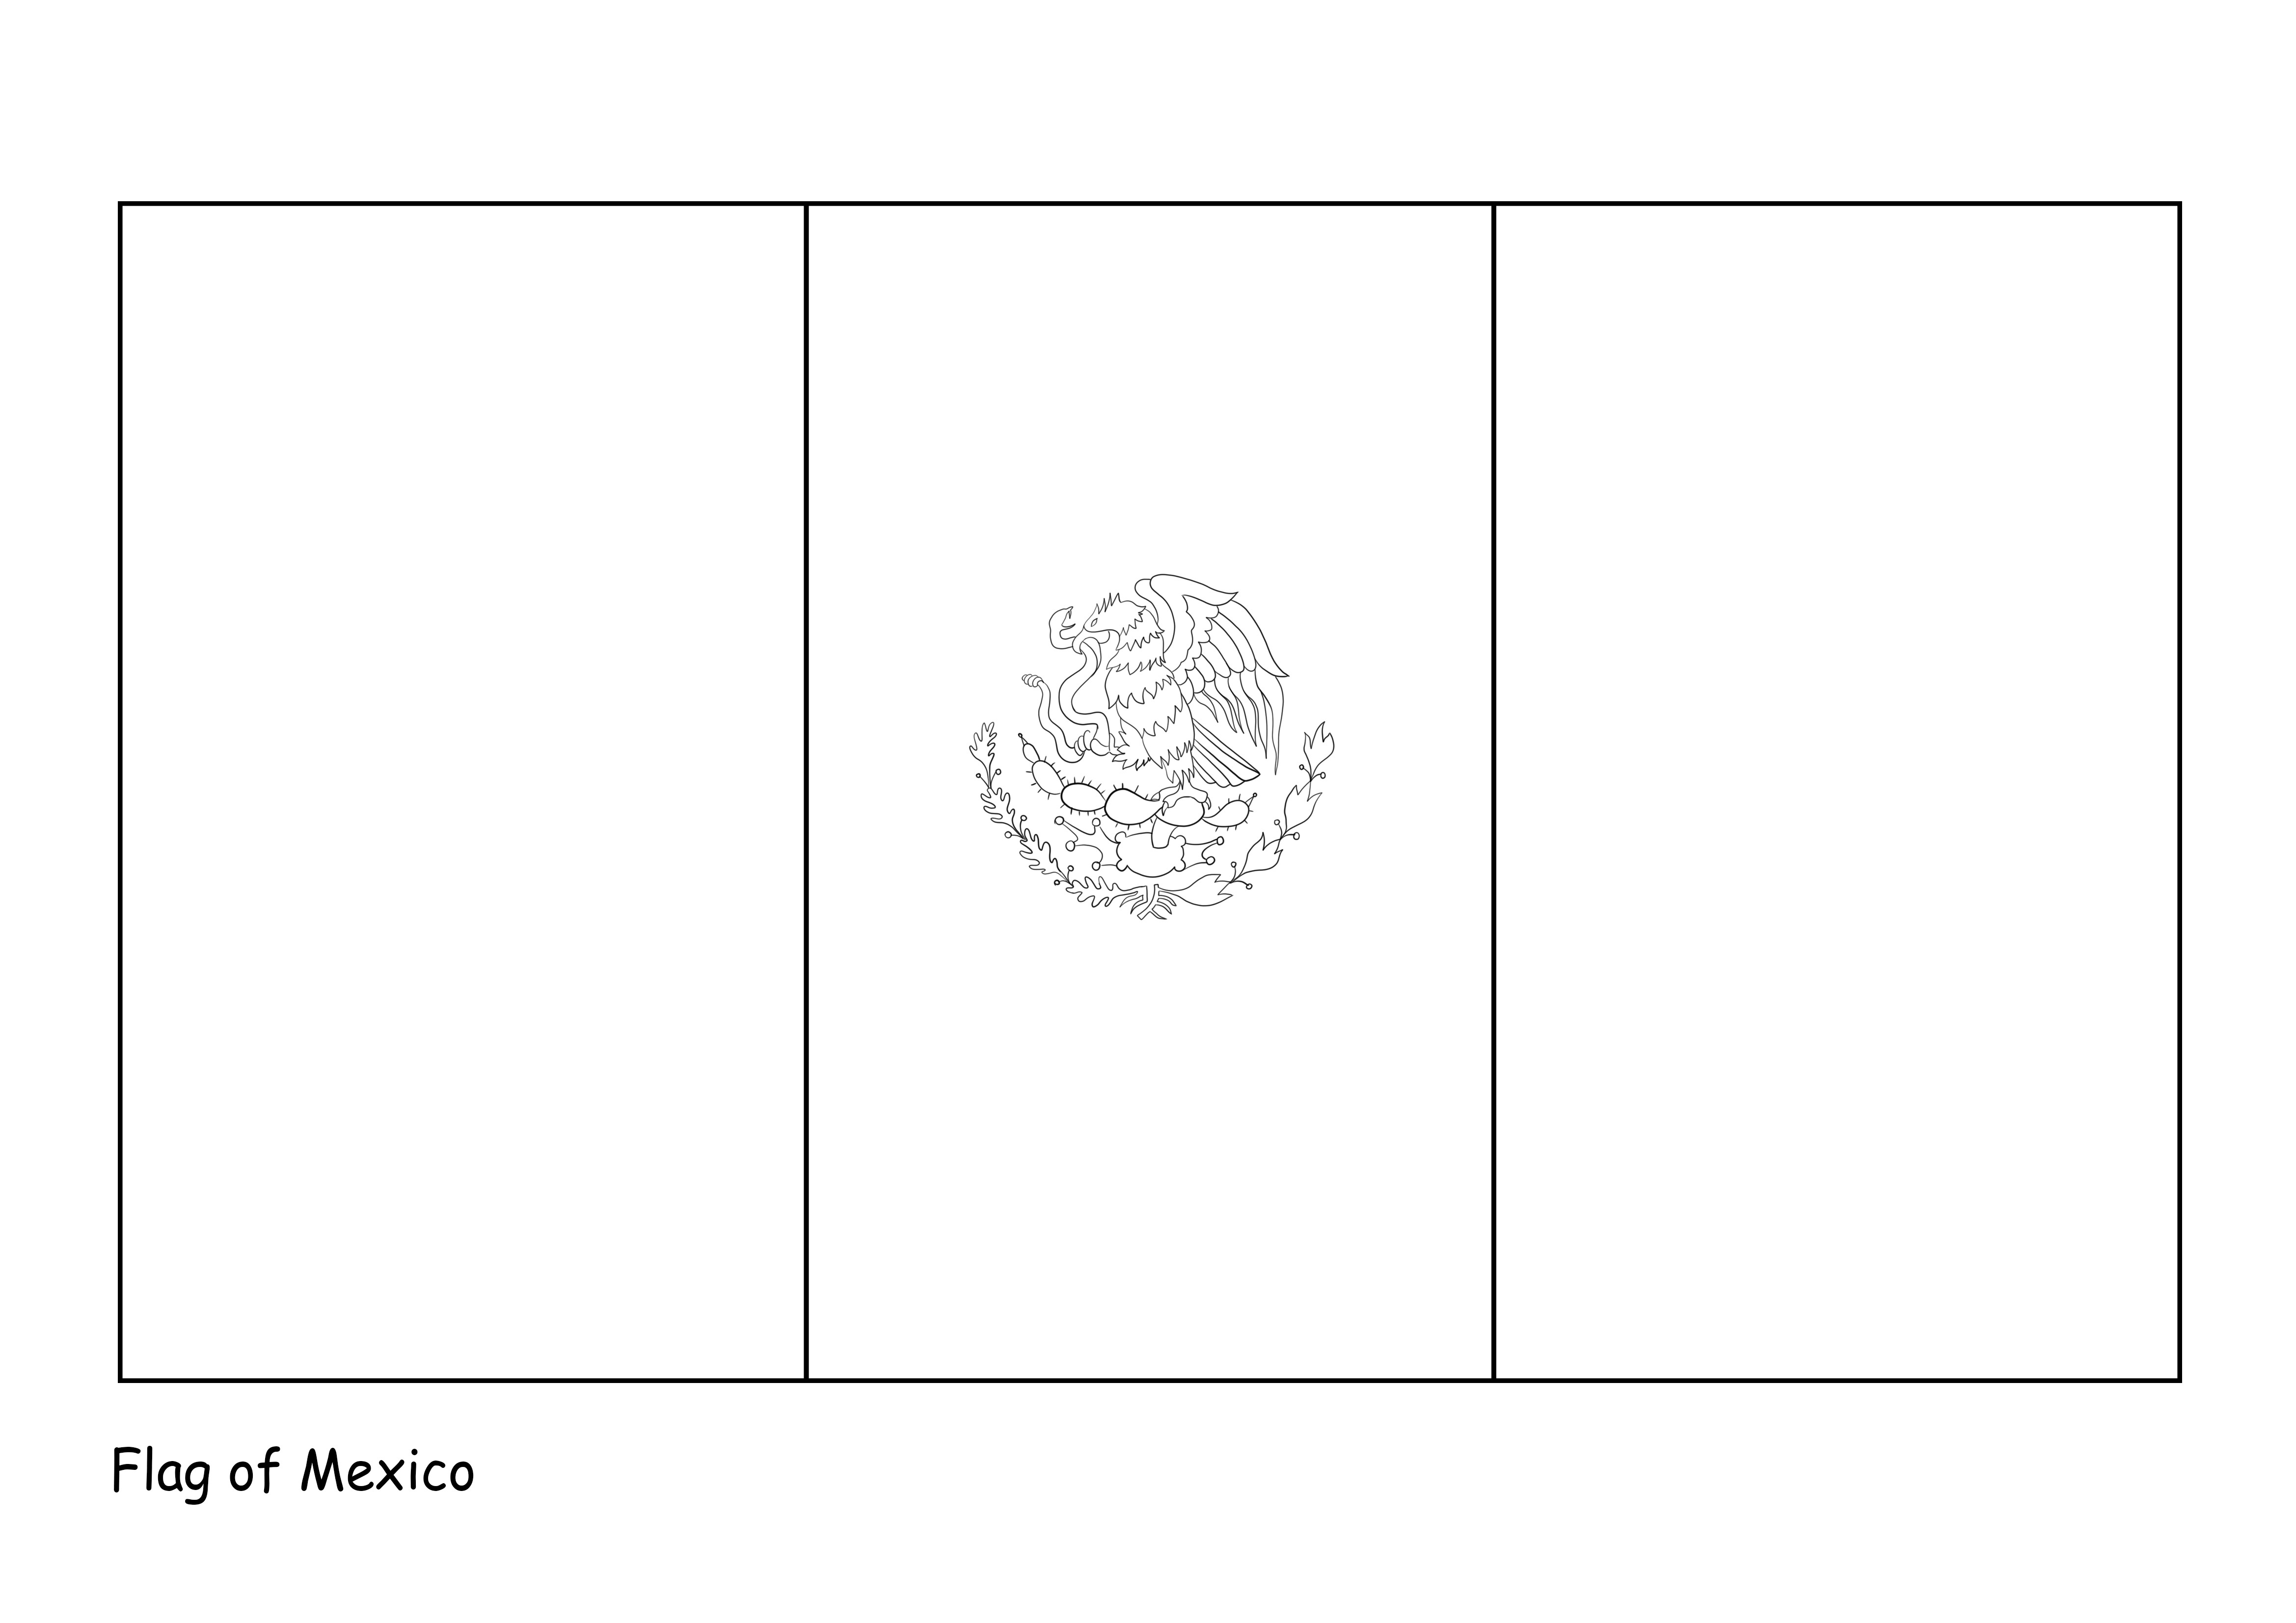 Meksikon lippu ladattavaksi tai tulostettavaksi ilmaiseksi